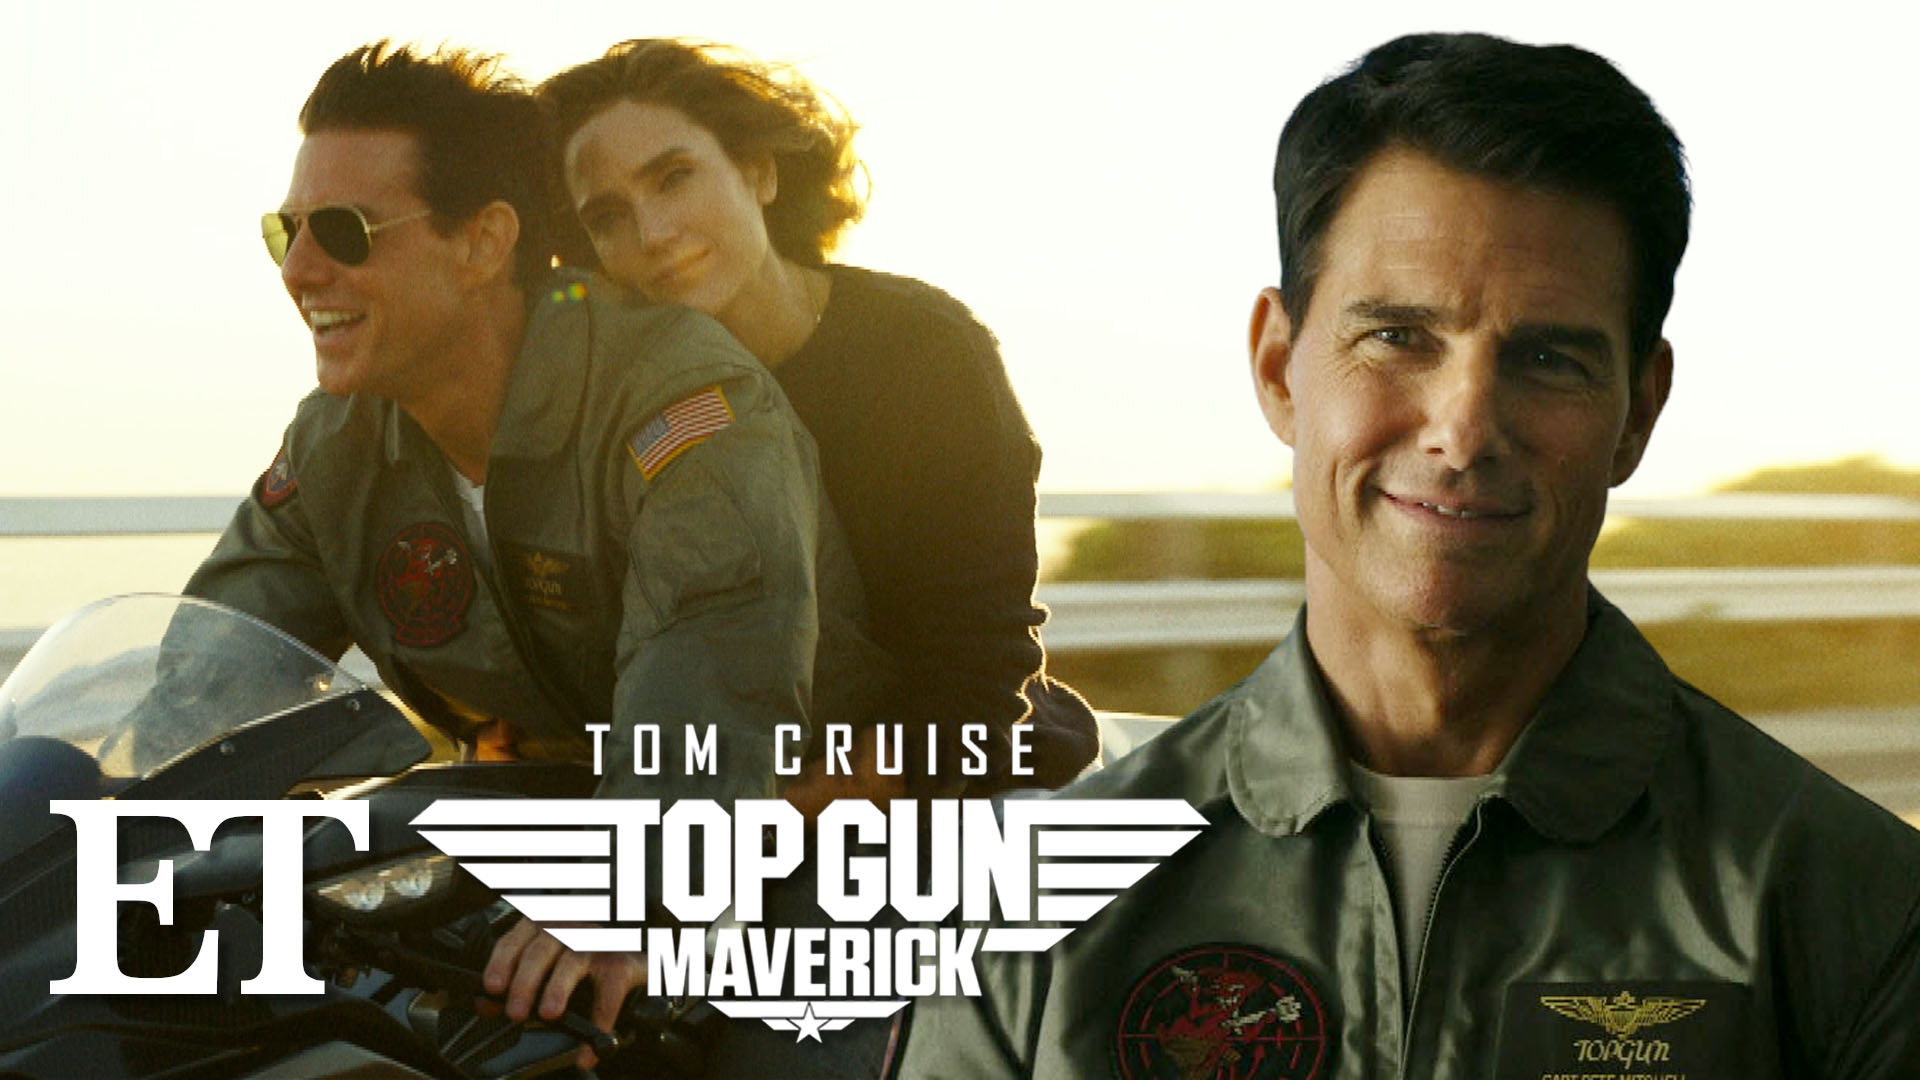 Top Gun Maverick' Copyright Lawsuit Should Be Grounded: Paramount